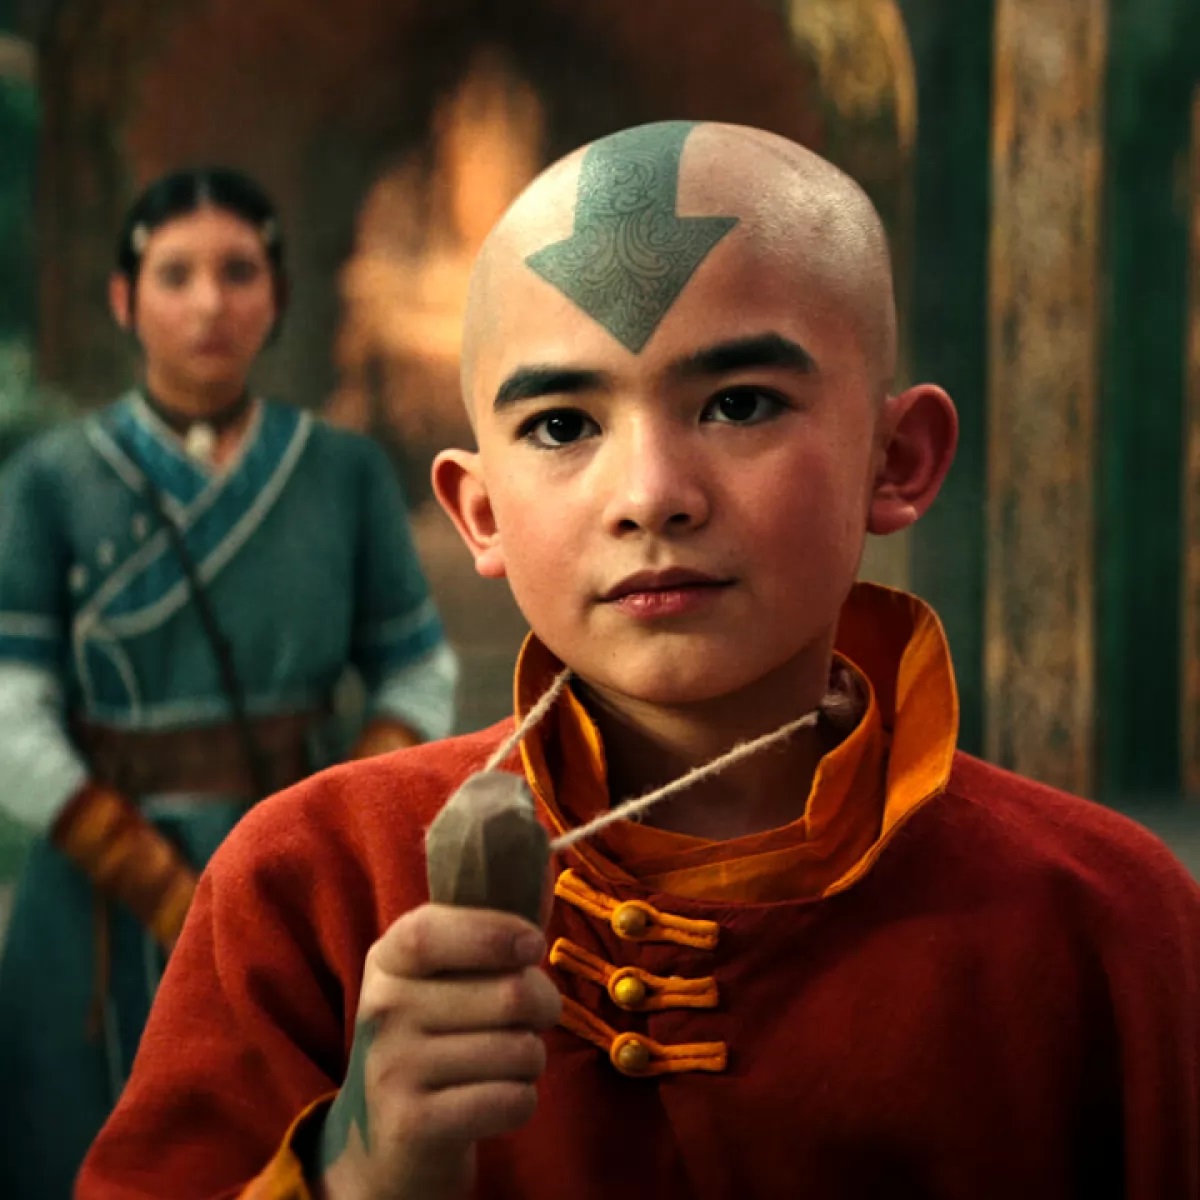 Avatar -La leggenda di Aang serie tv live action fantasy formazione netflix trama cast recensione trailer